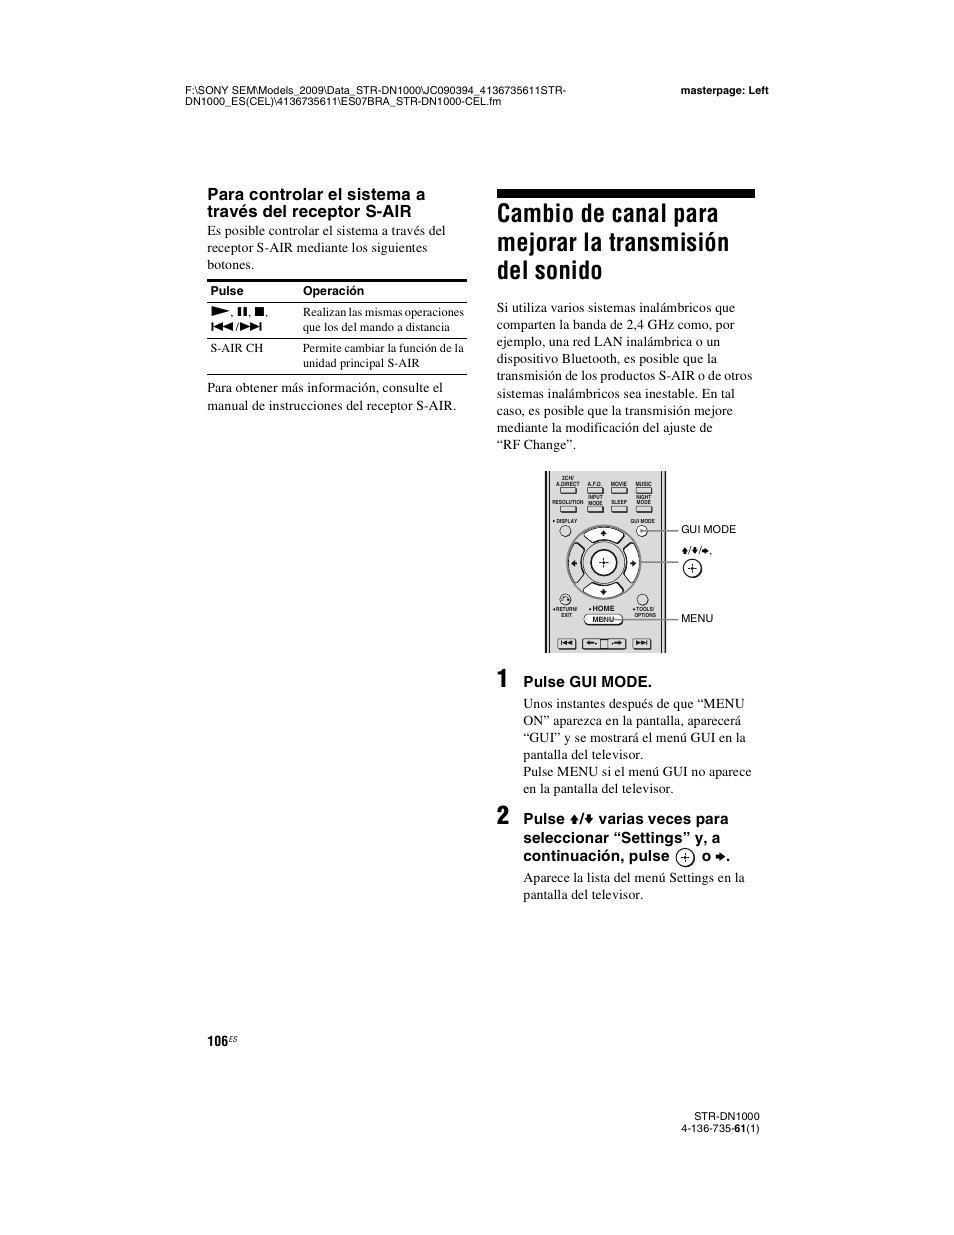 Cambio de canal para mejorar la, Transmisión del sonido, Pulse gui mode | Sony STR-DN1000 Manual del usuario | Página 106 / 144